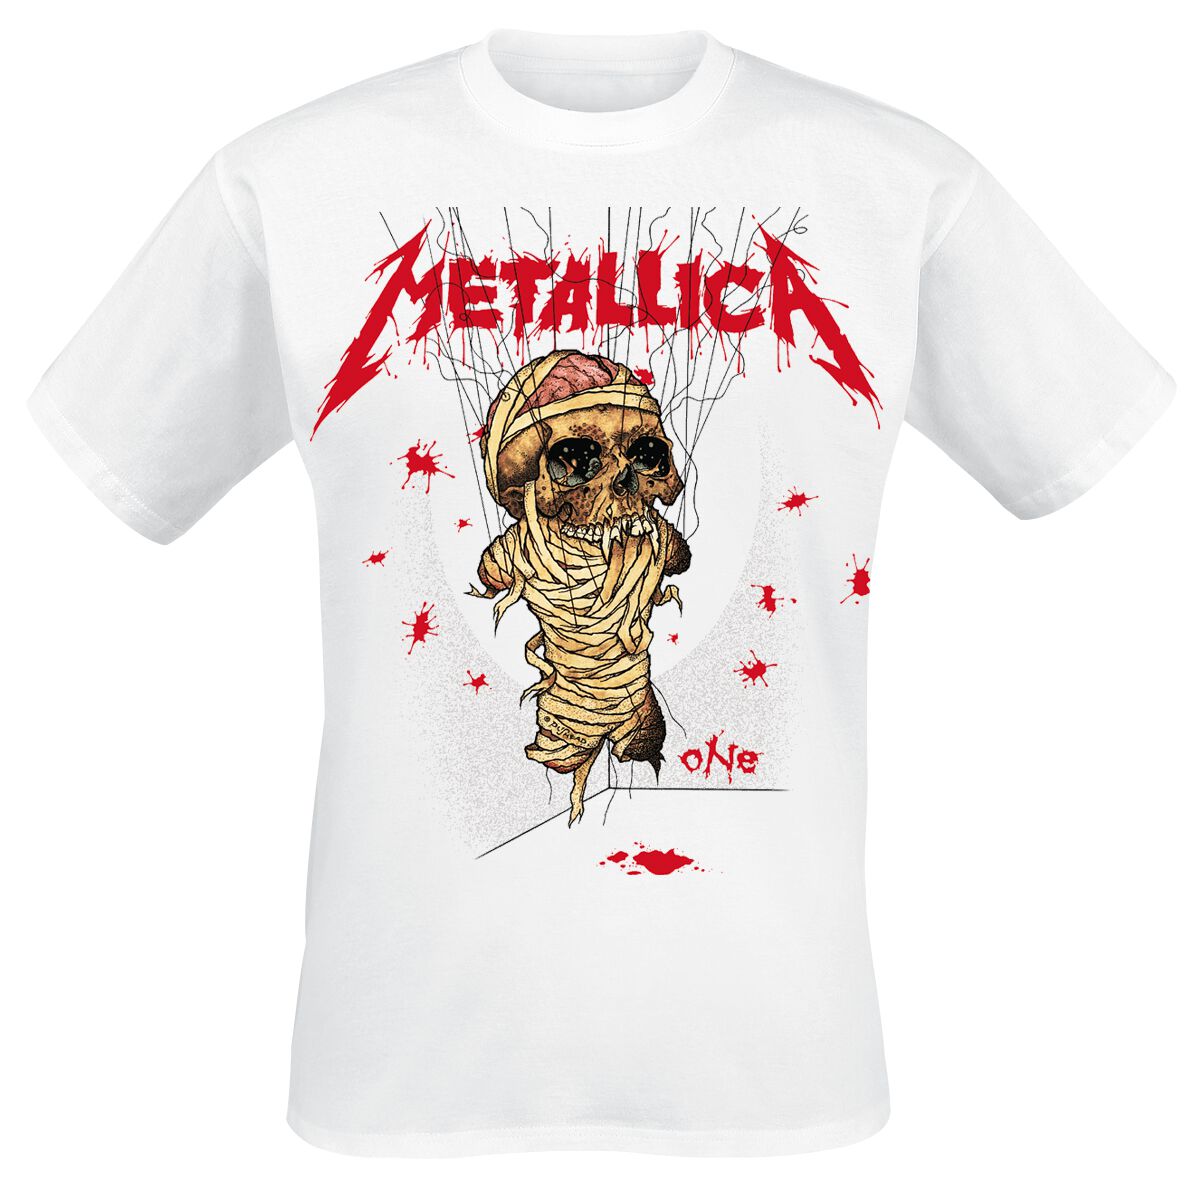 Metallica T-Shirt - One Landmine - S bis 3XL - für Männer - Größe S - weiß  - Lizenziertes Merchandise!